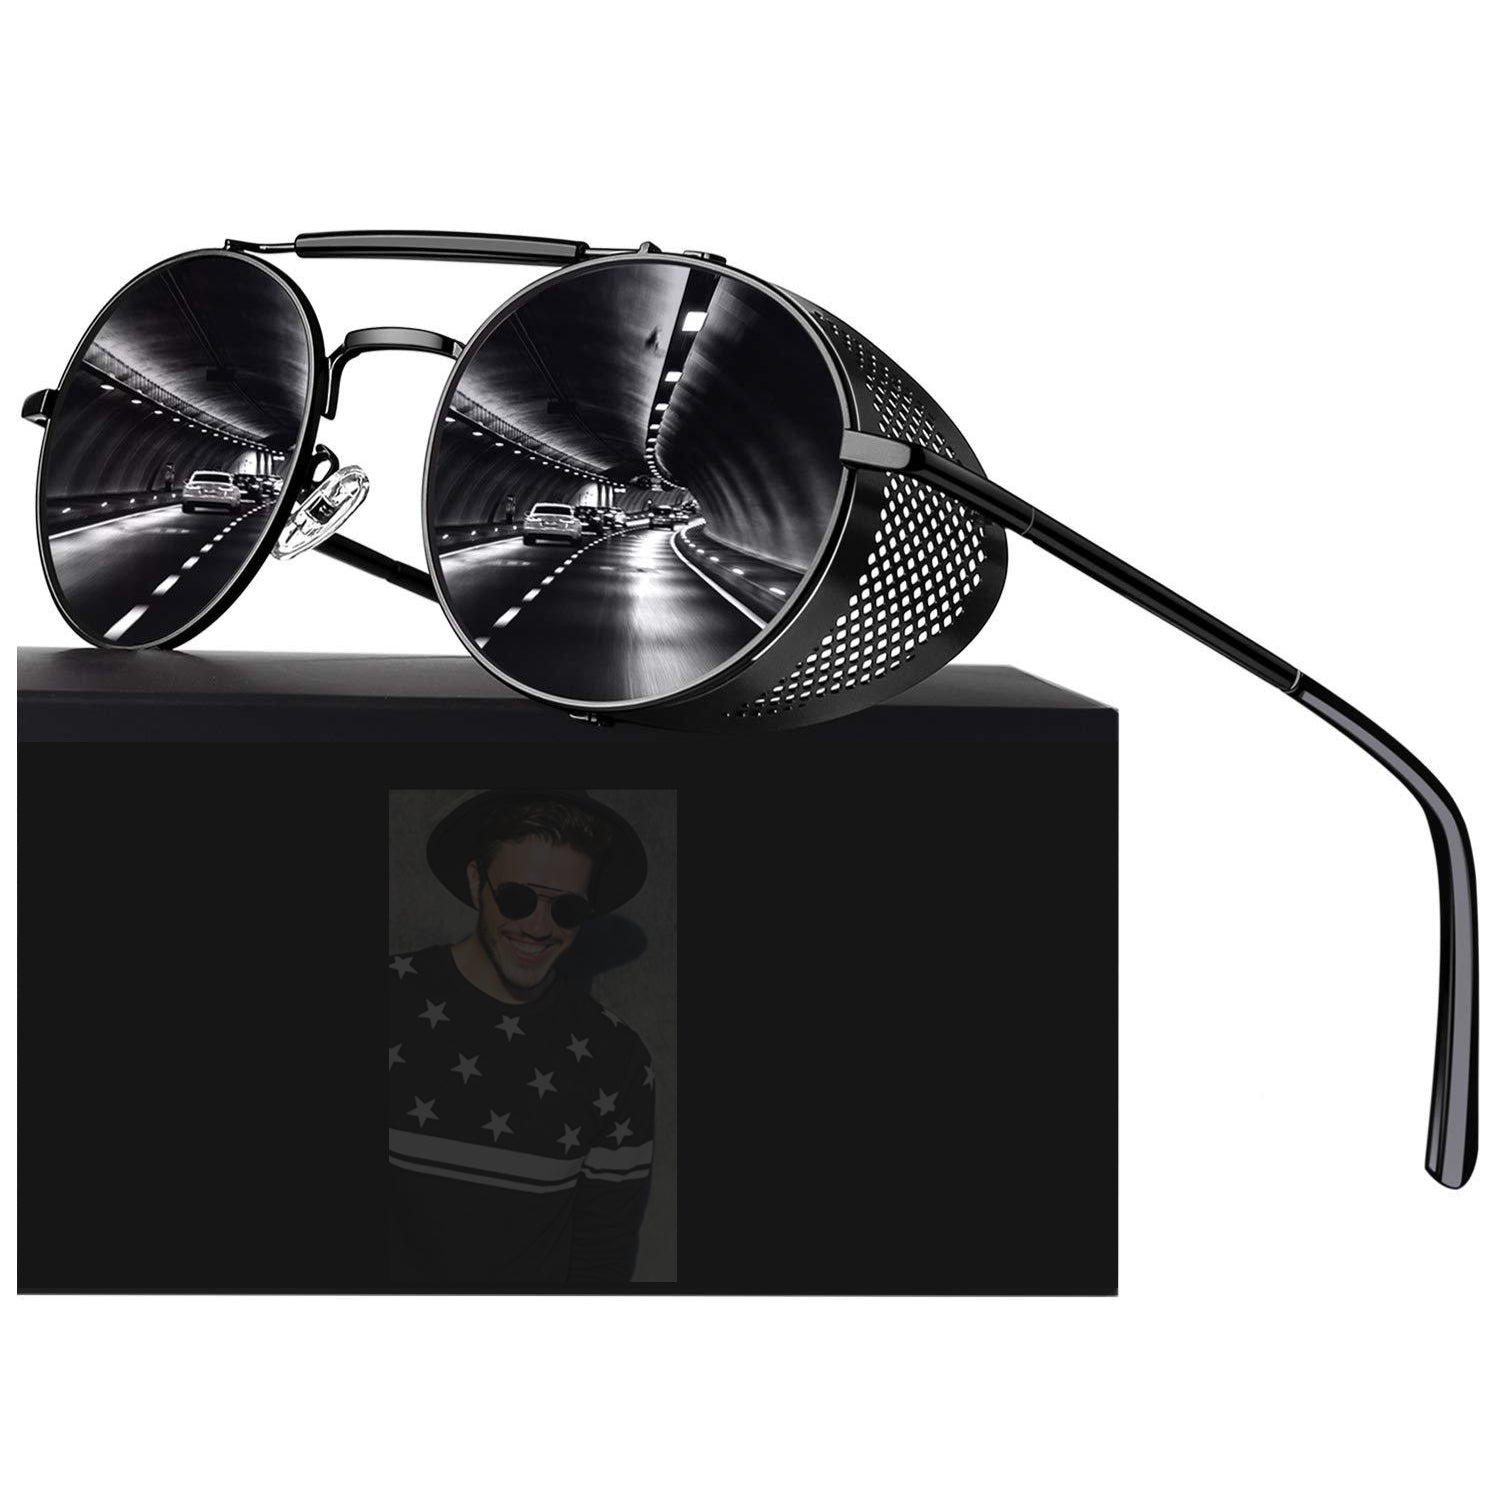 MSUNXPRO Polarized Steampunk Sunglasses - Retro Round Side Shield Metal Goggles